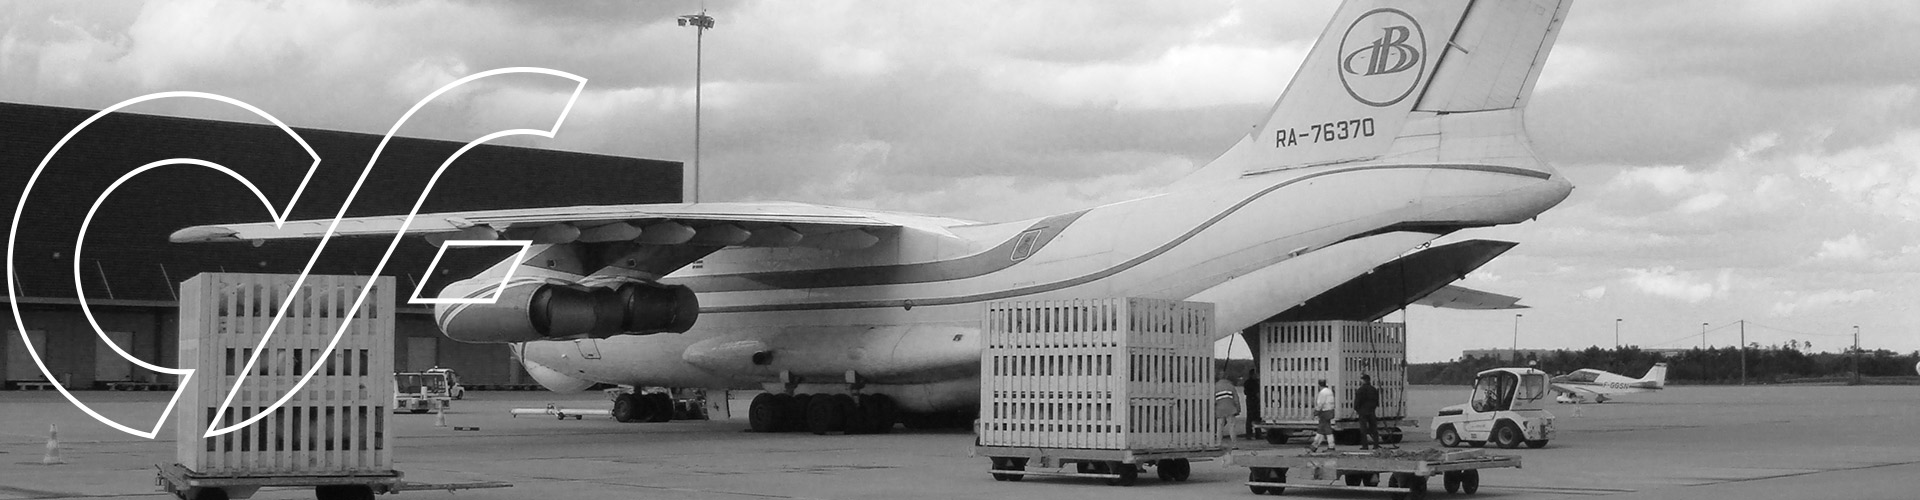 Air cargo cargo plane